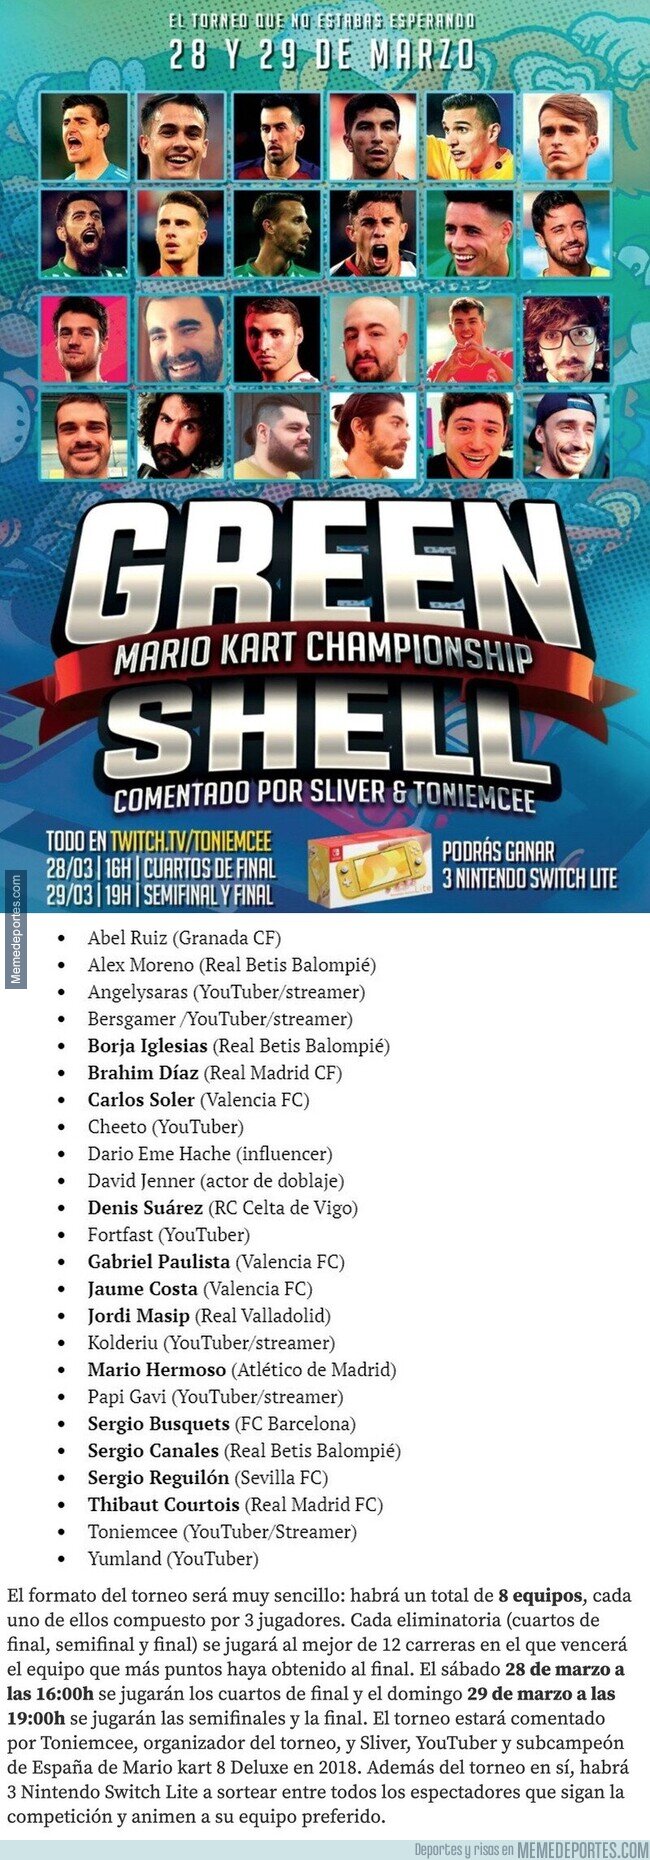 1101622 - Se viene el torneo de Mario Kart. Participarán todos ellos. Algo es algo...